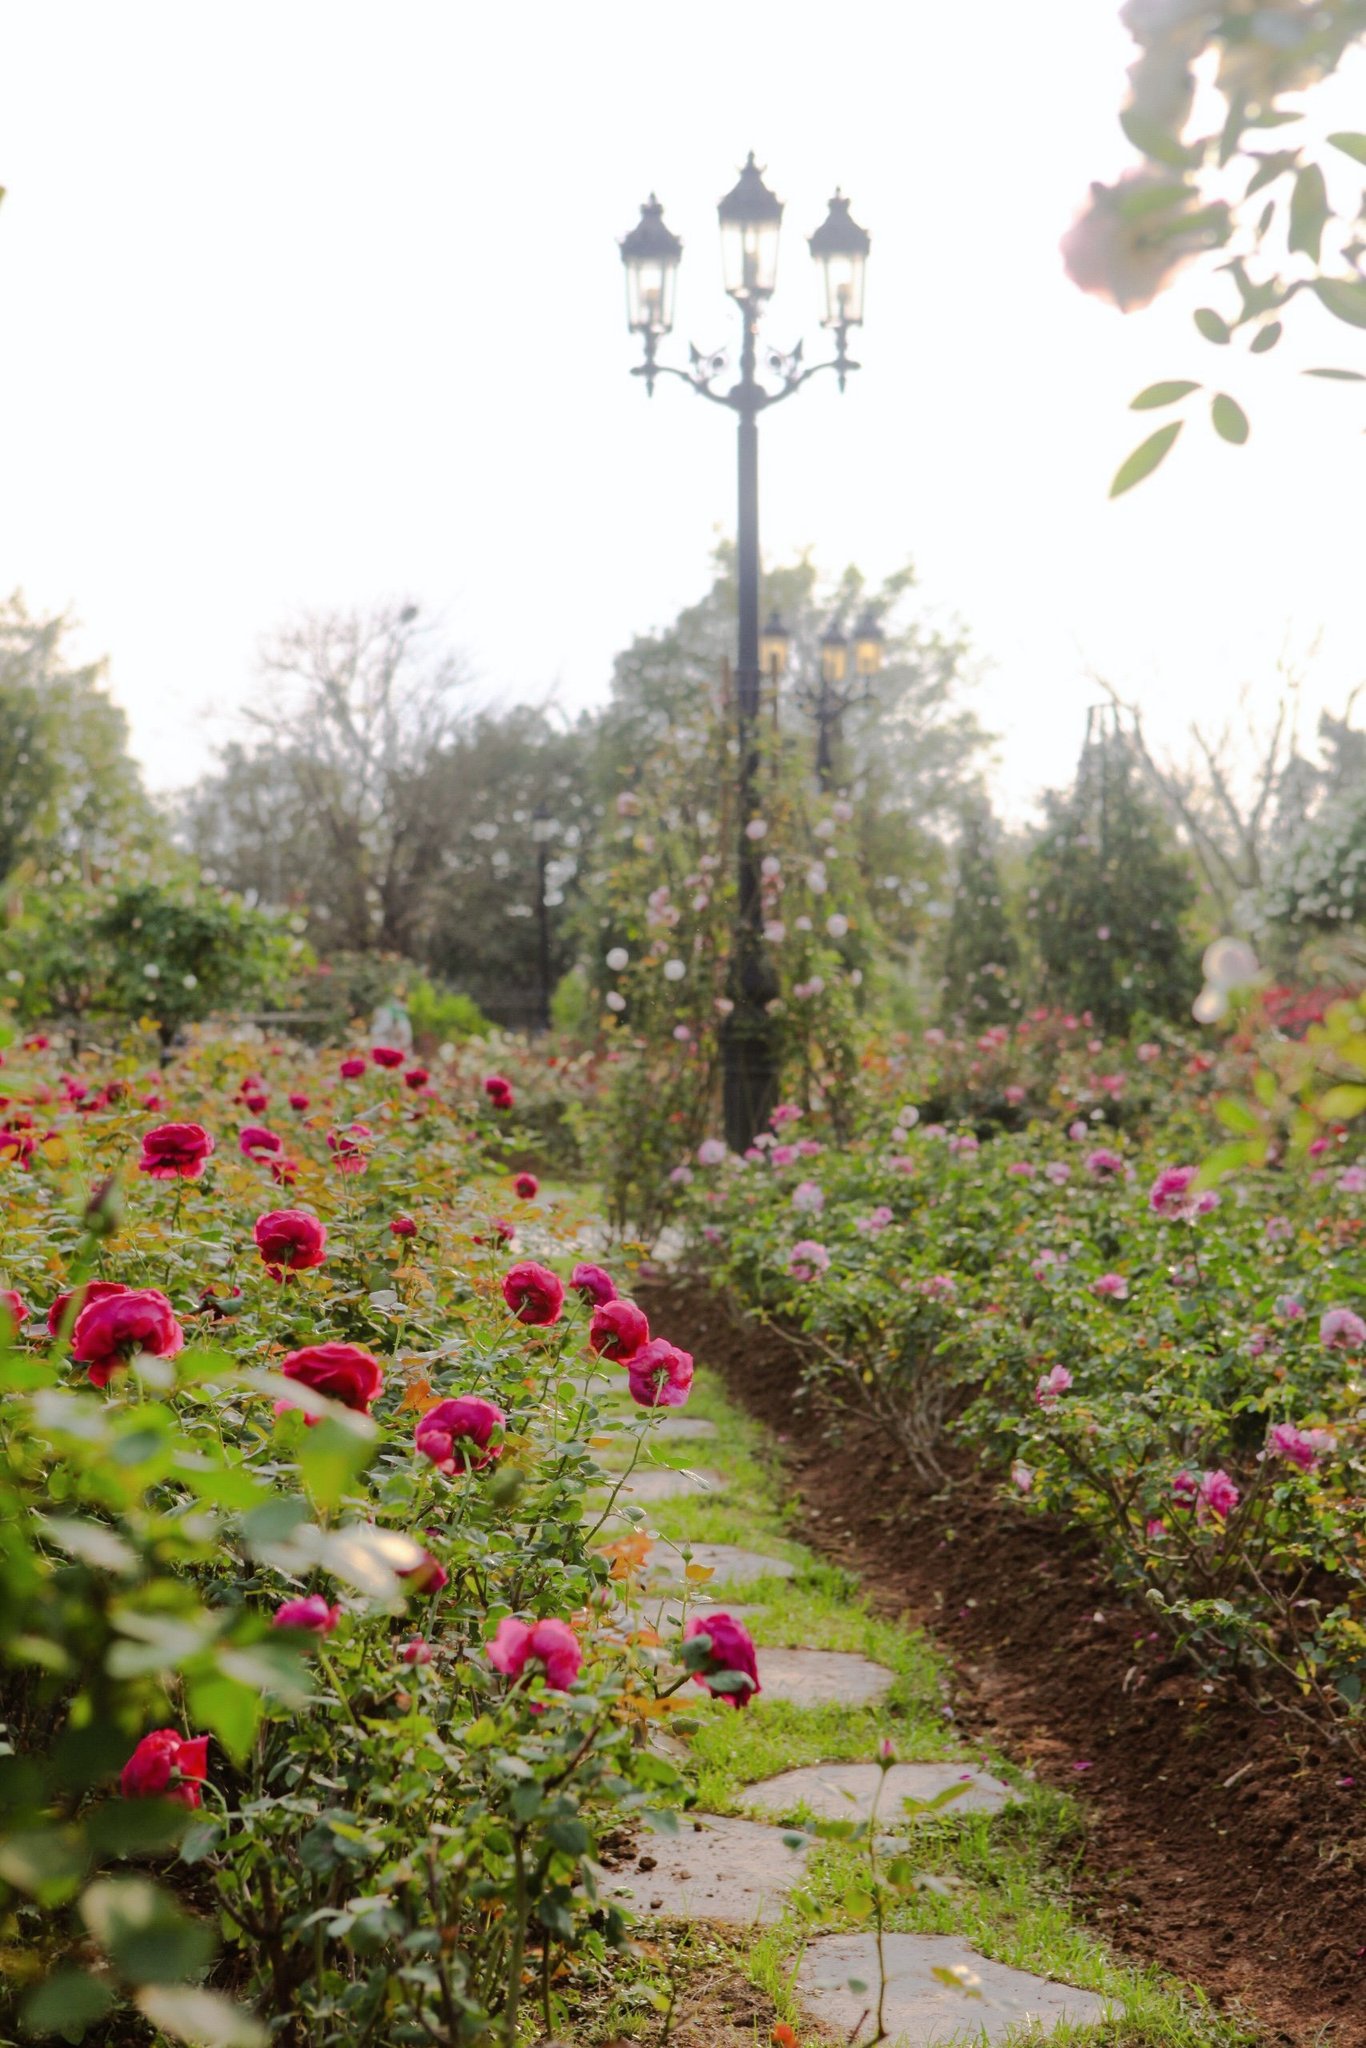 Trường đại học gây sốt với vườn hồng hàng trăm loại đẹp như cổ tích: Chỉ ngắm thôi cũng đã đầy cảm hứng học tập- Ảnh 11.